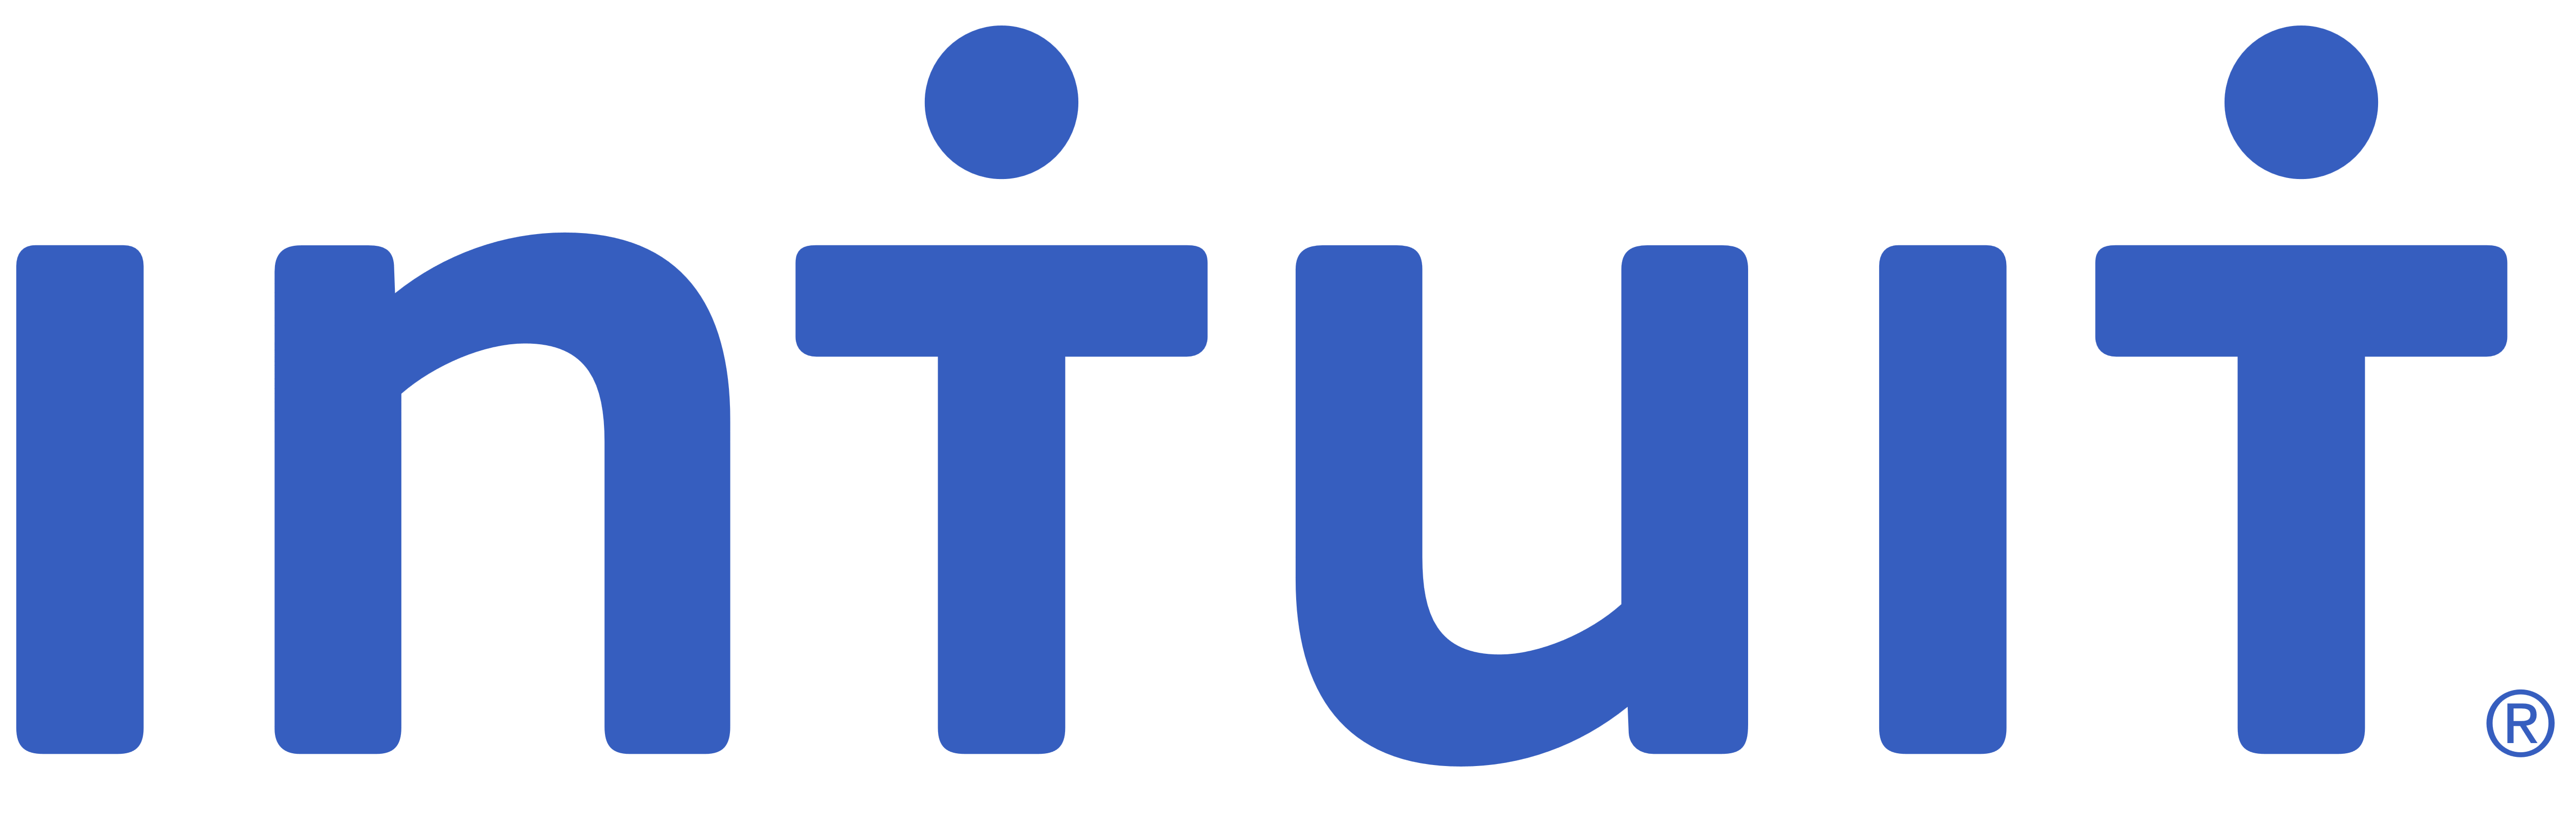 trello logo transparent